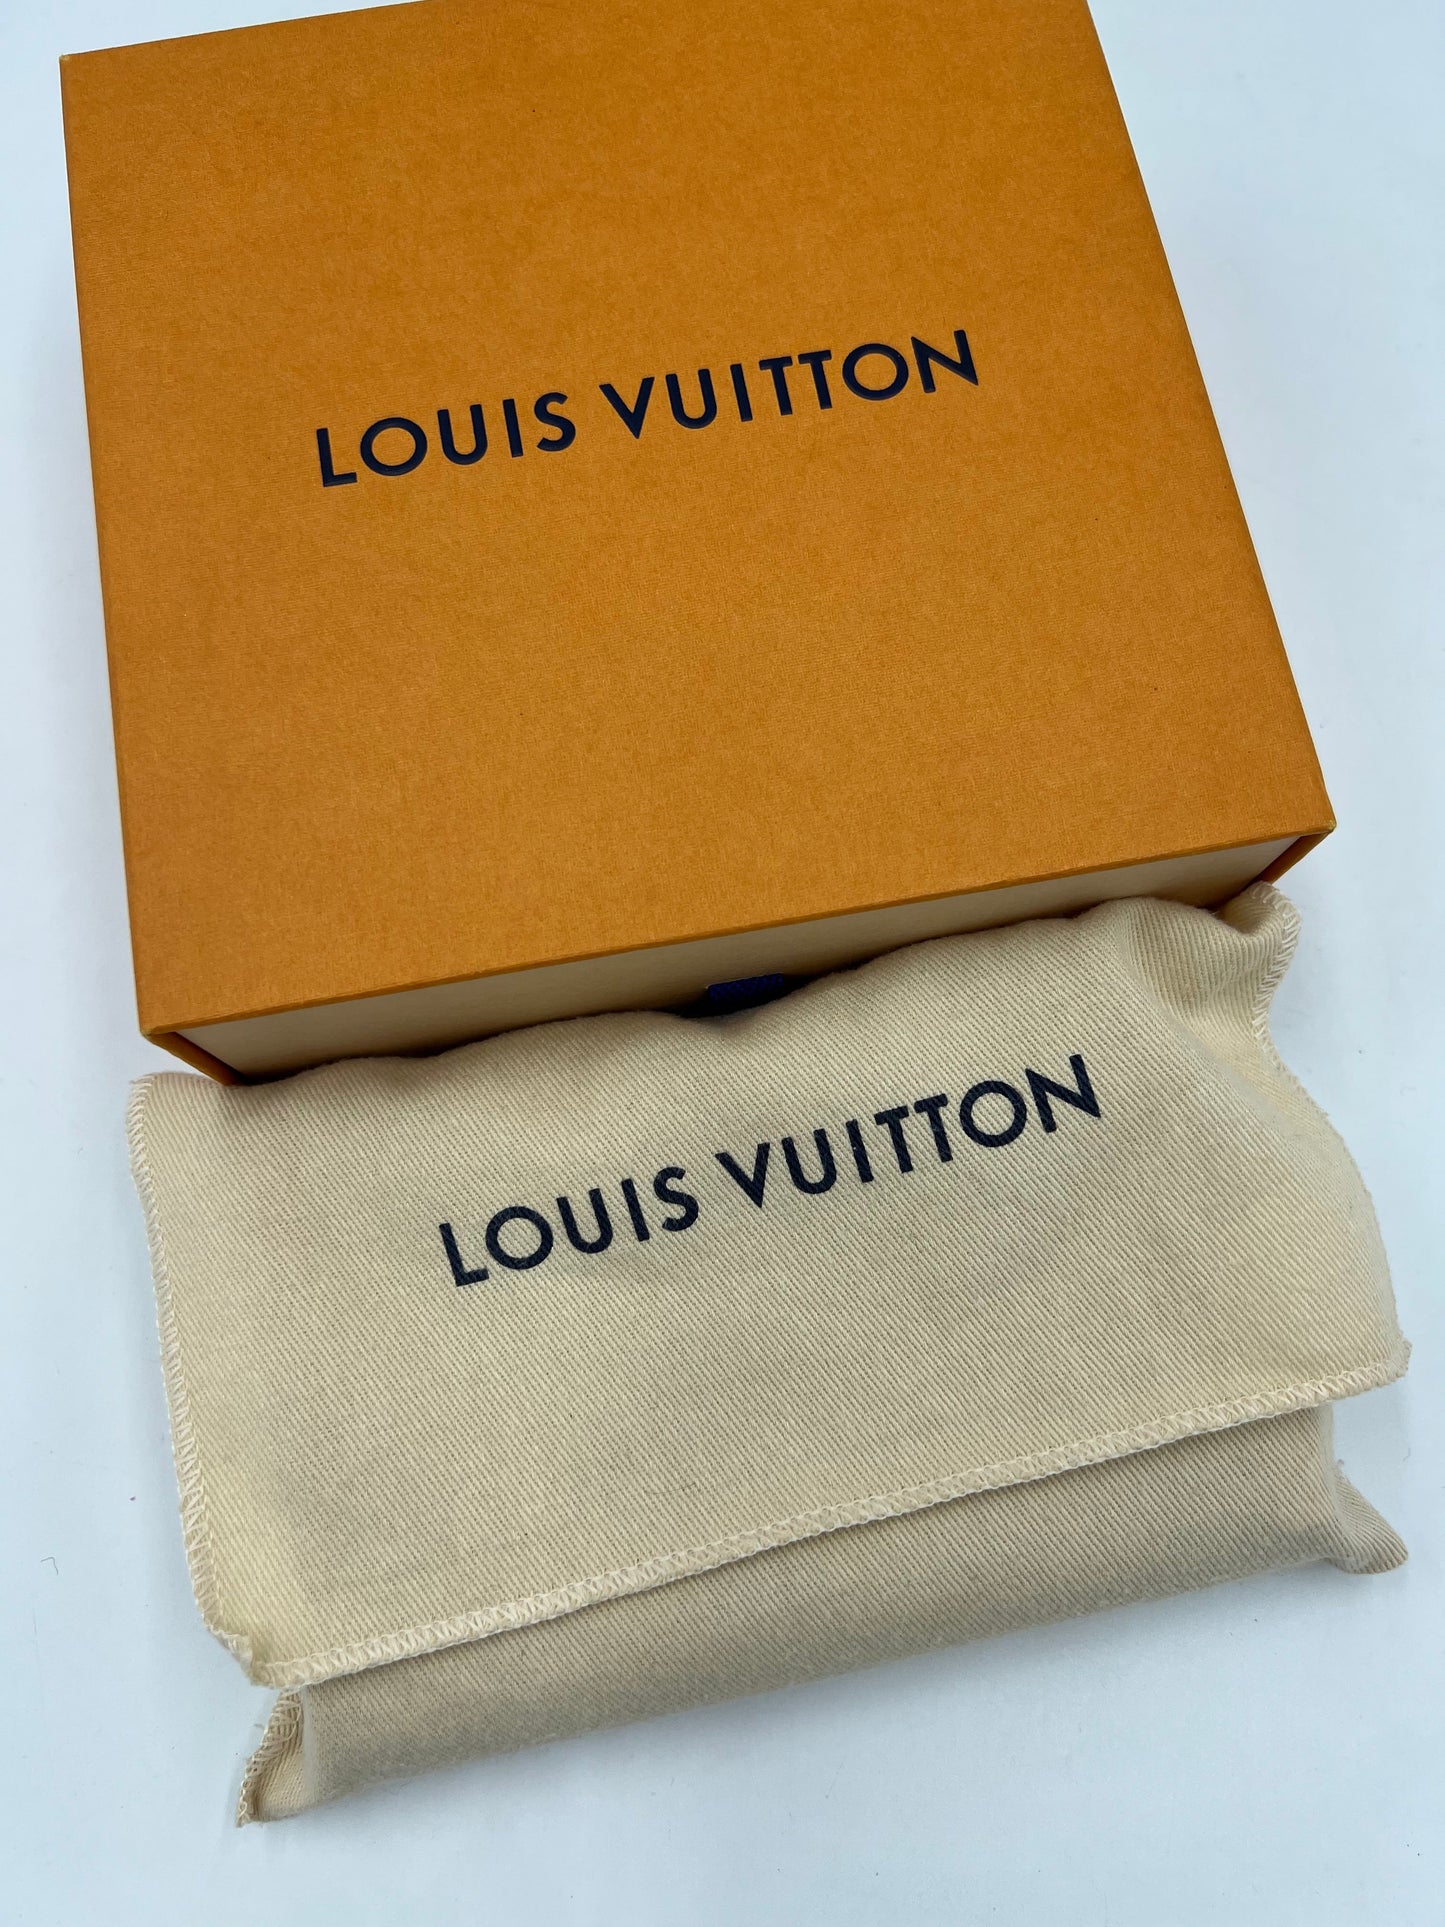 Louis Vuitton Damier Azur Wallet